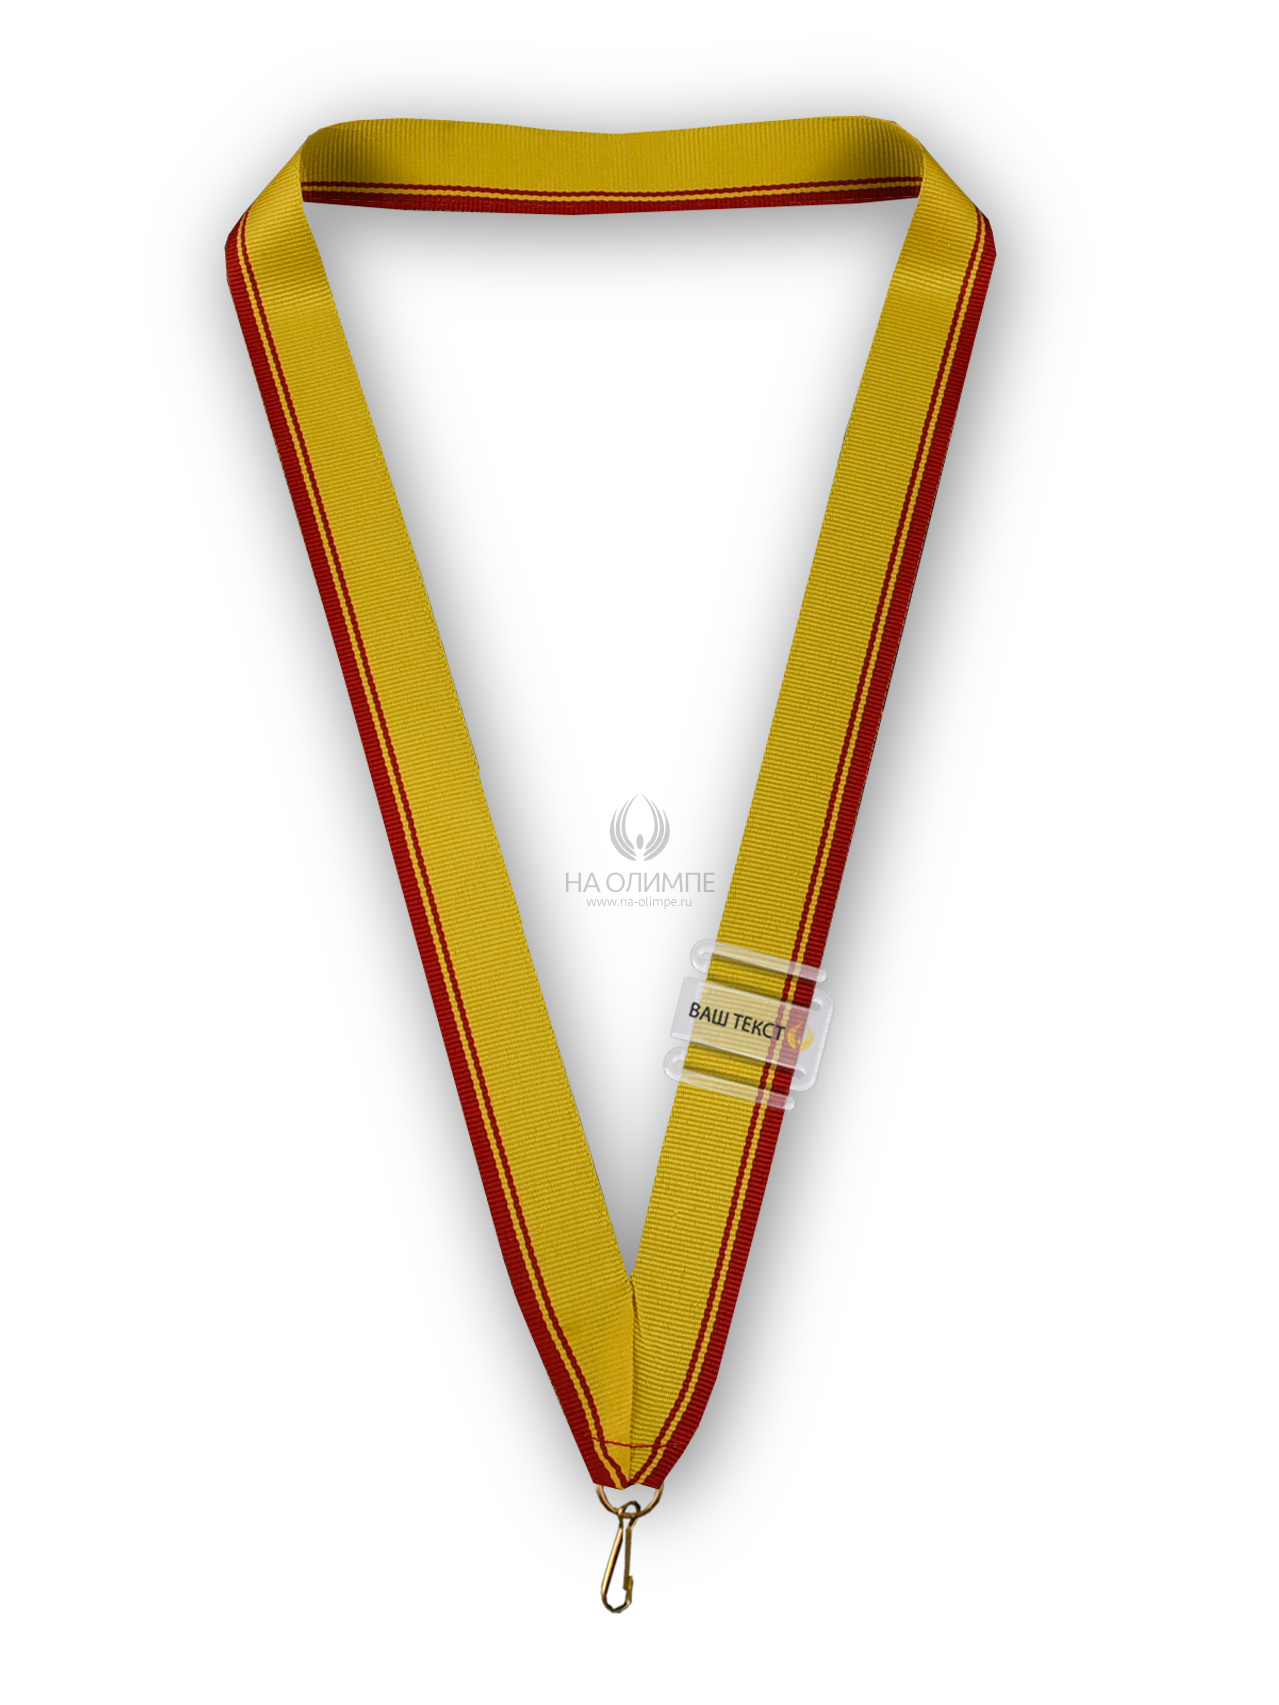 Лента для медали (Чувашская респ.), ширина ленты 22 мм